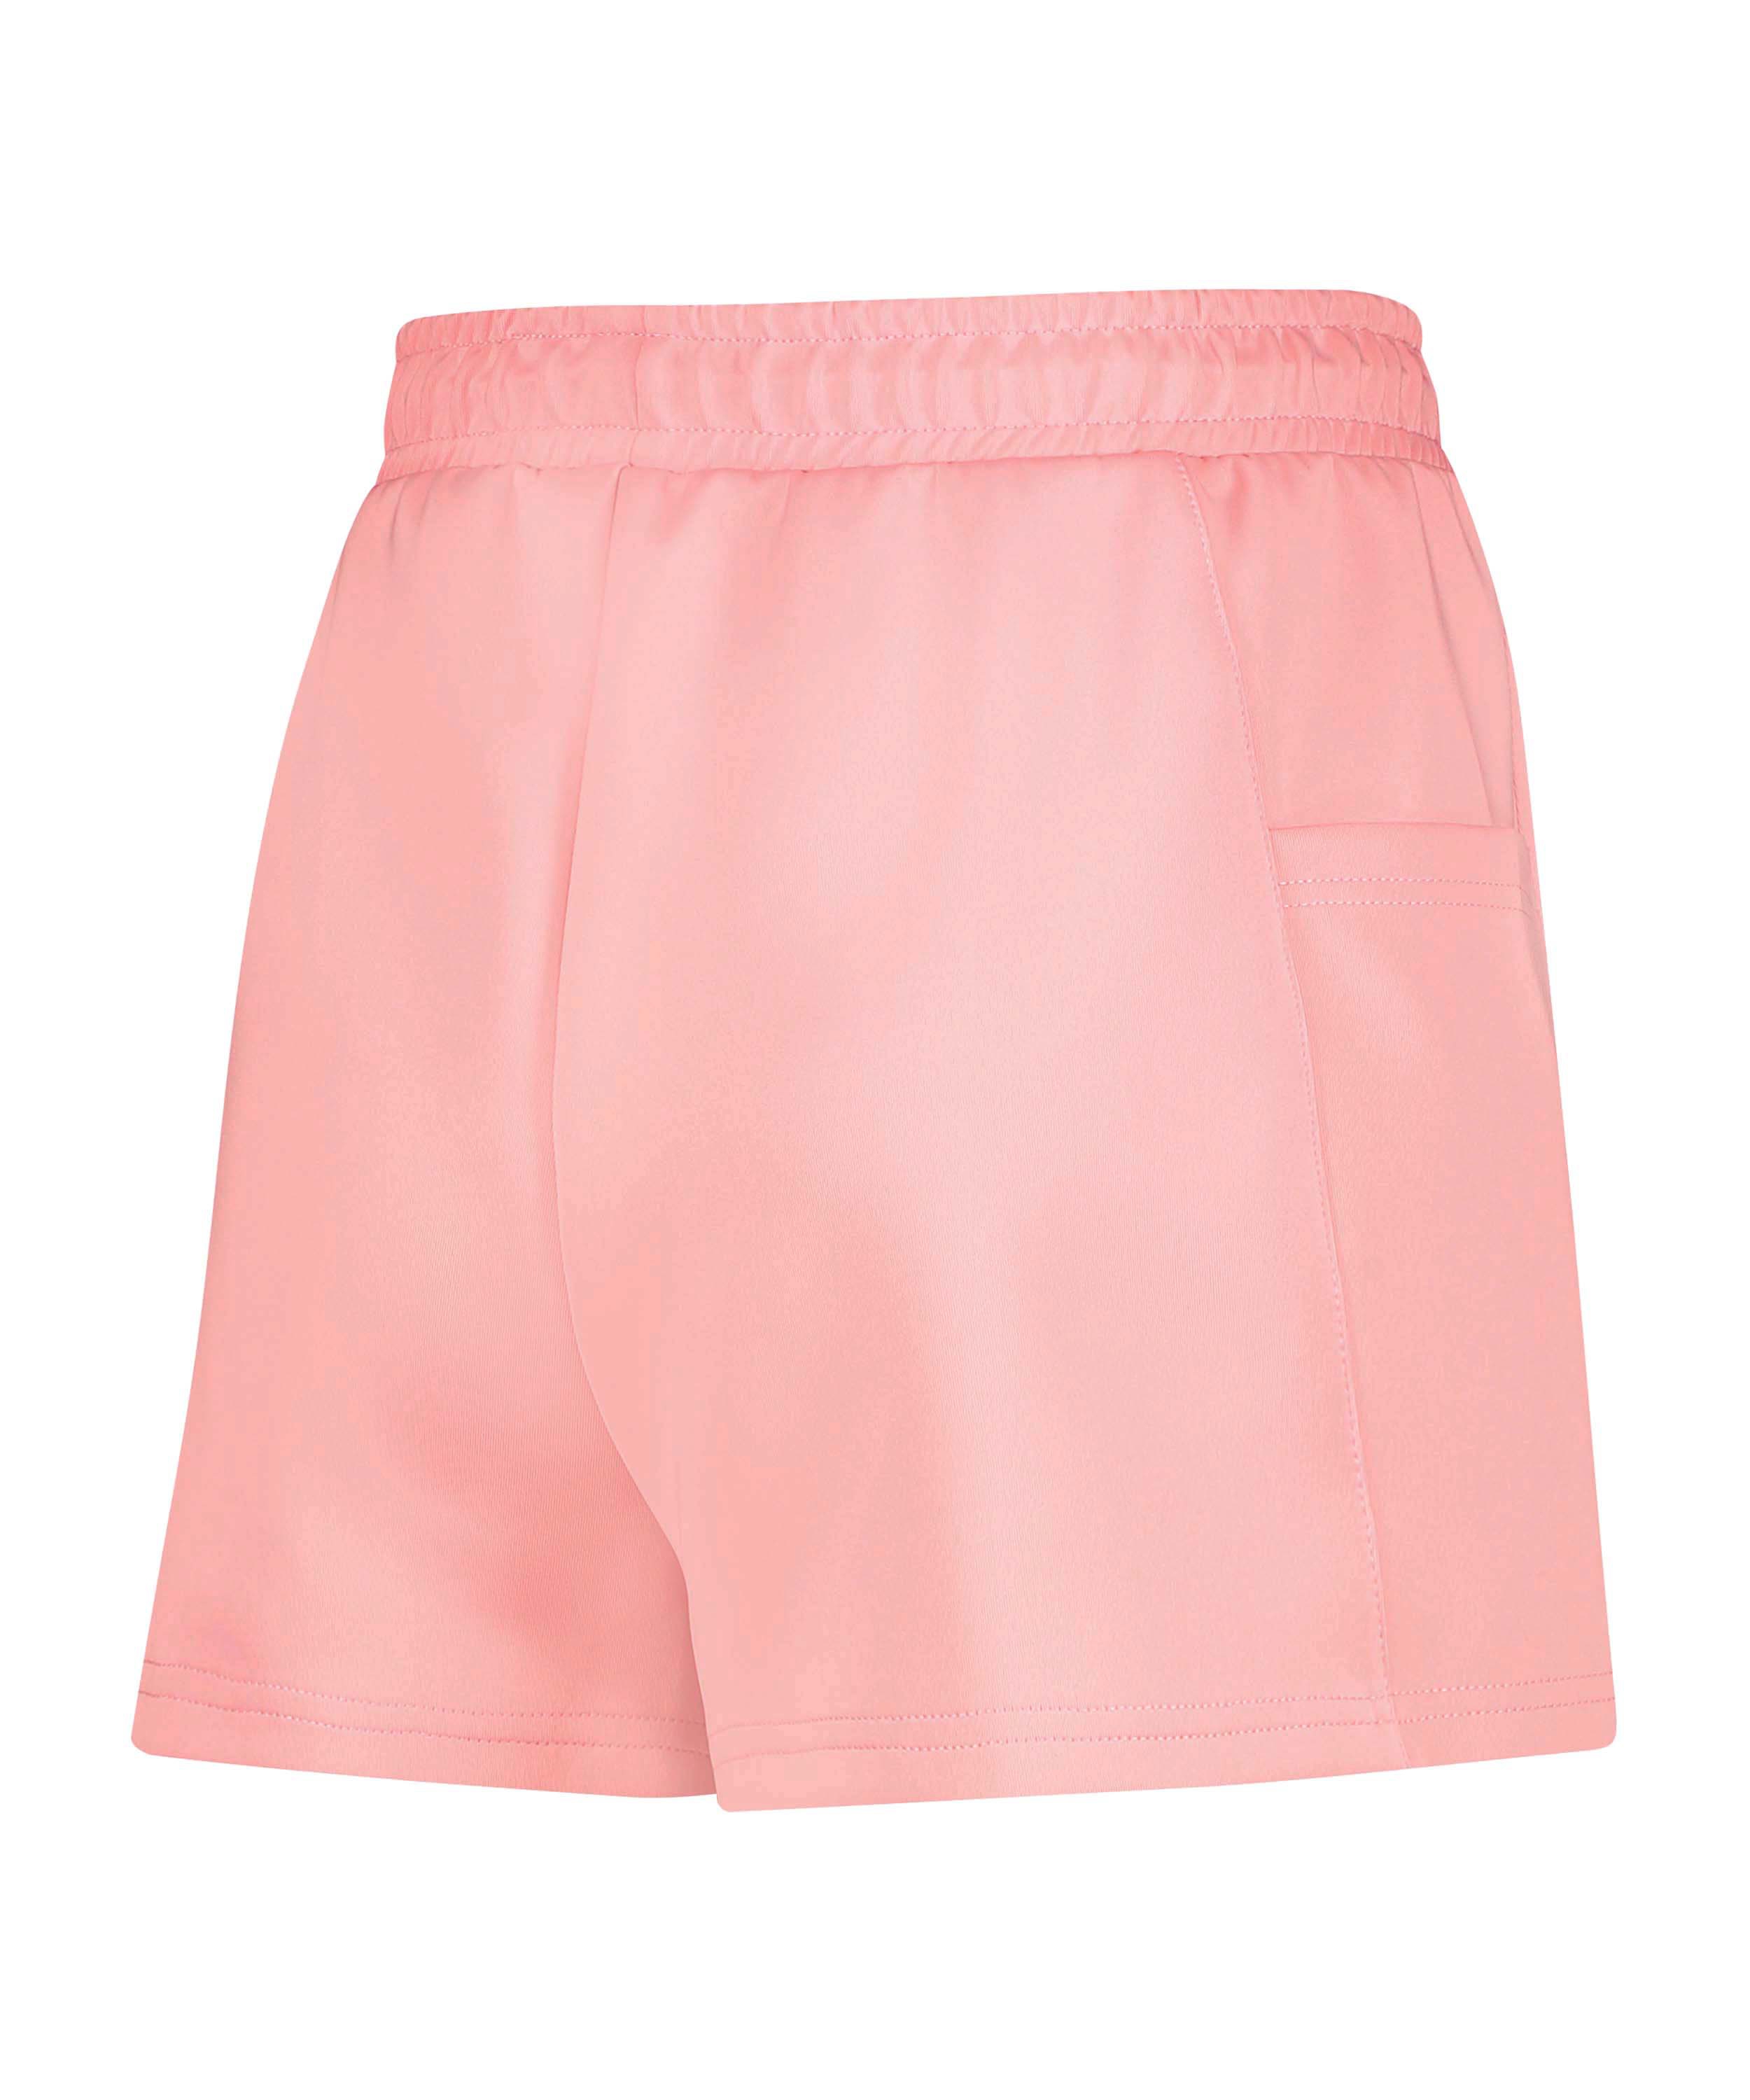 HKMX High waist shorts Ruby, Roze, main